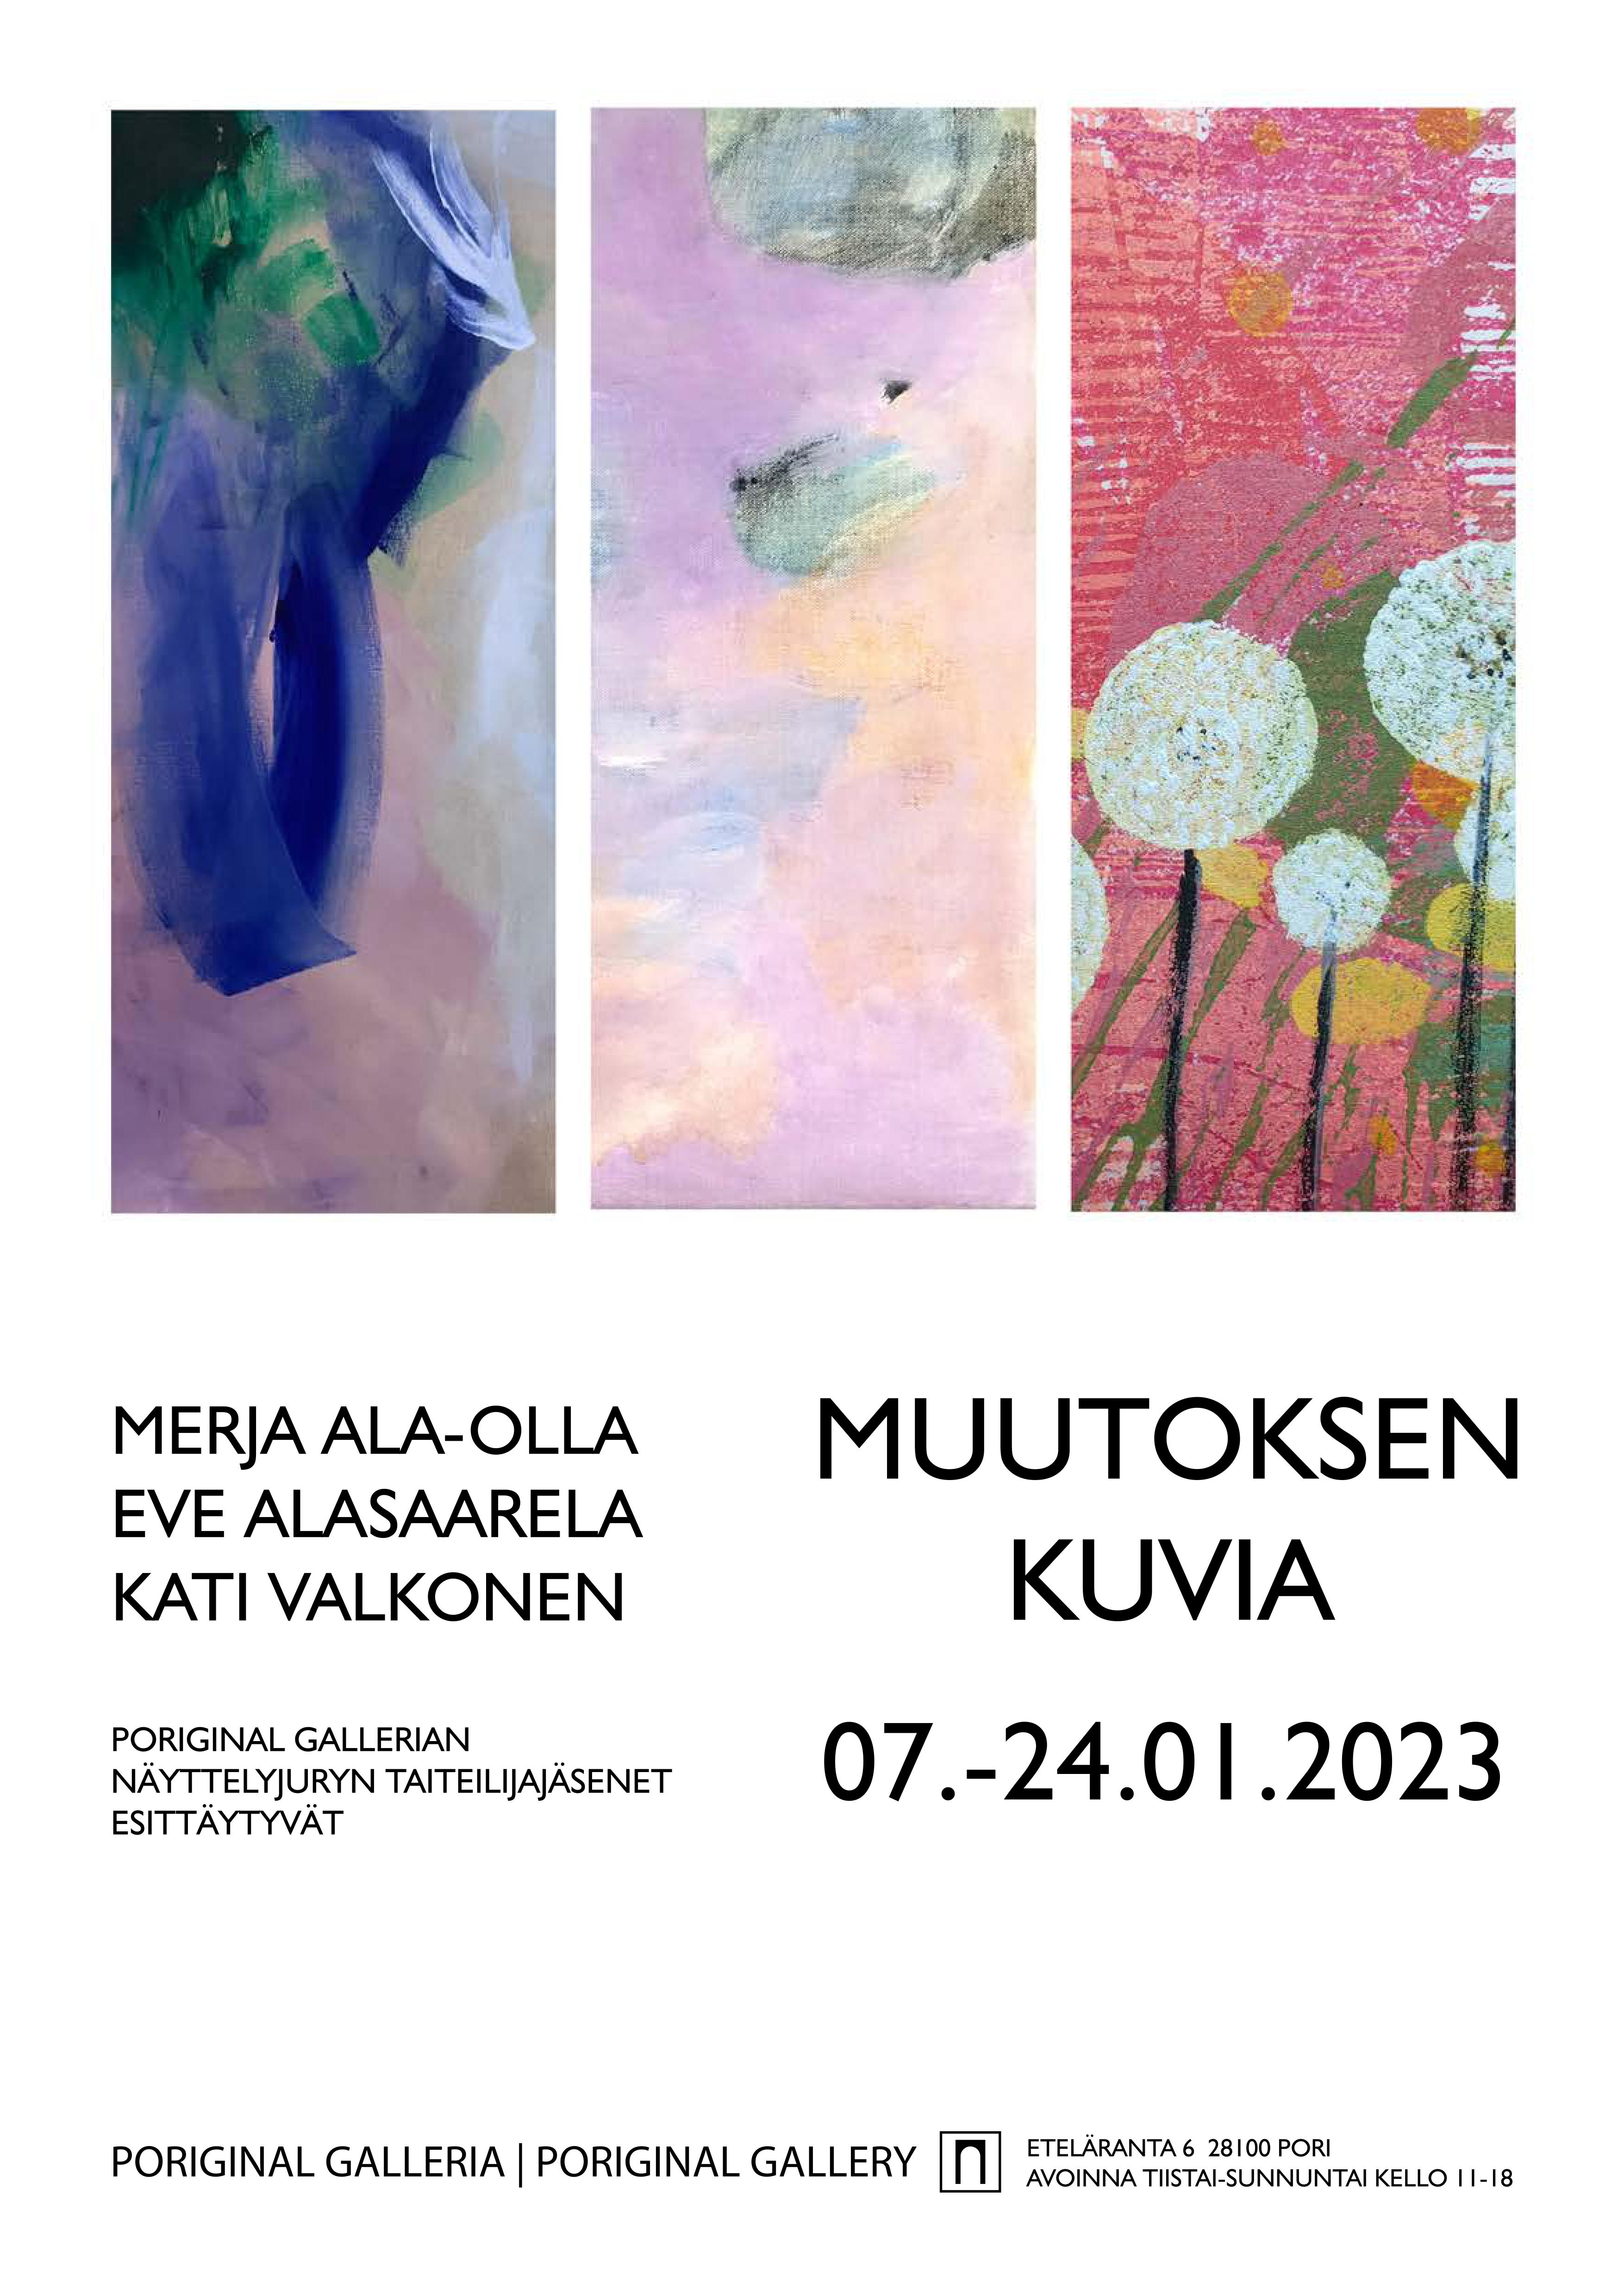 Muutoksen kuvia - Merja Ala-Olla, Eve Alasaarela ja Kati Valkonen,
Poriginal Galleria 7. - 24.1.2023